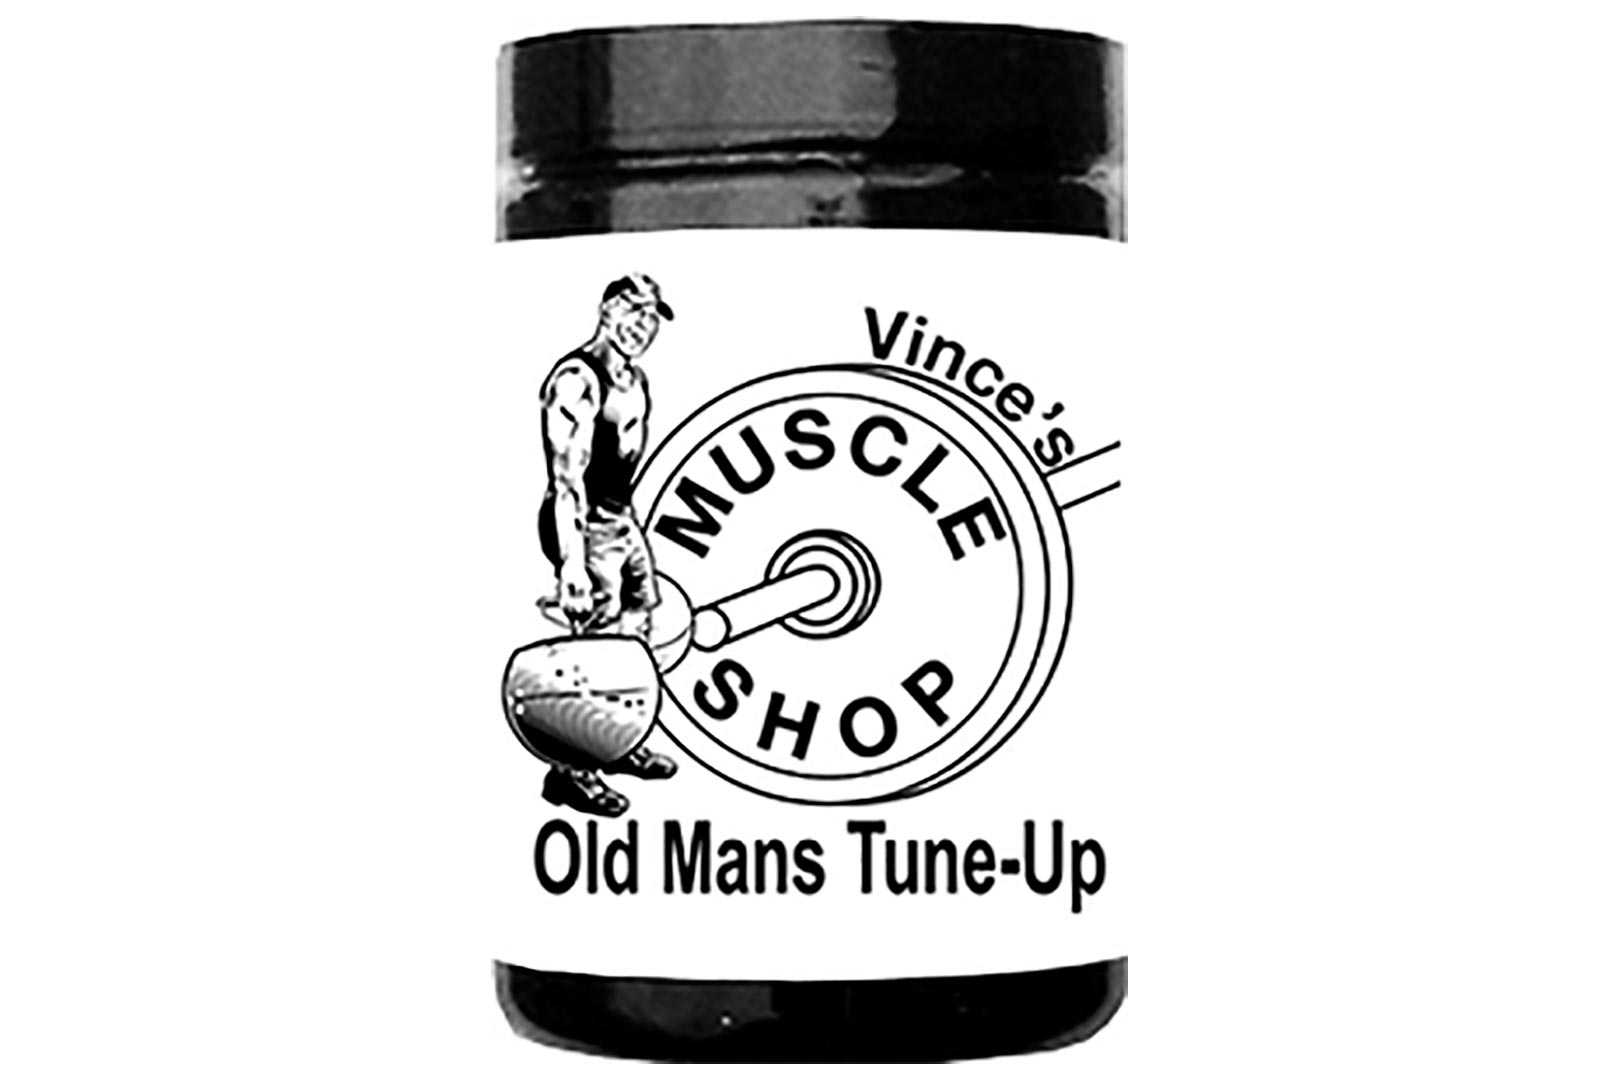 Vinces Muscle Shop Old Man Tunes Up